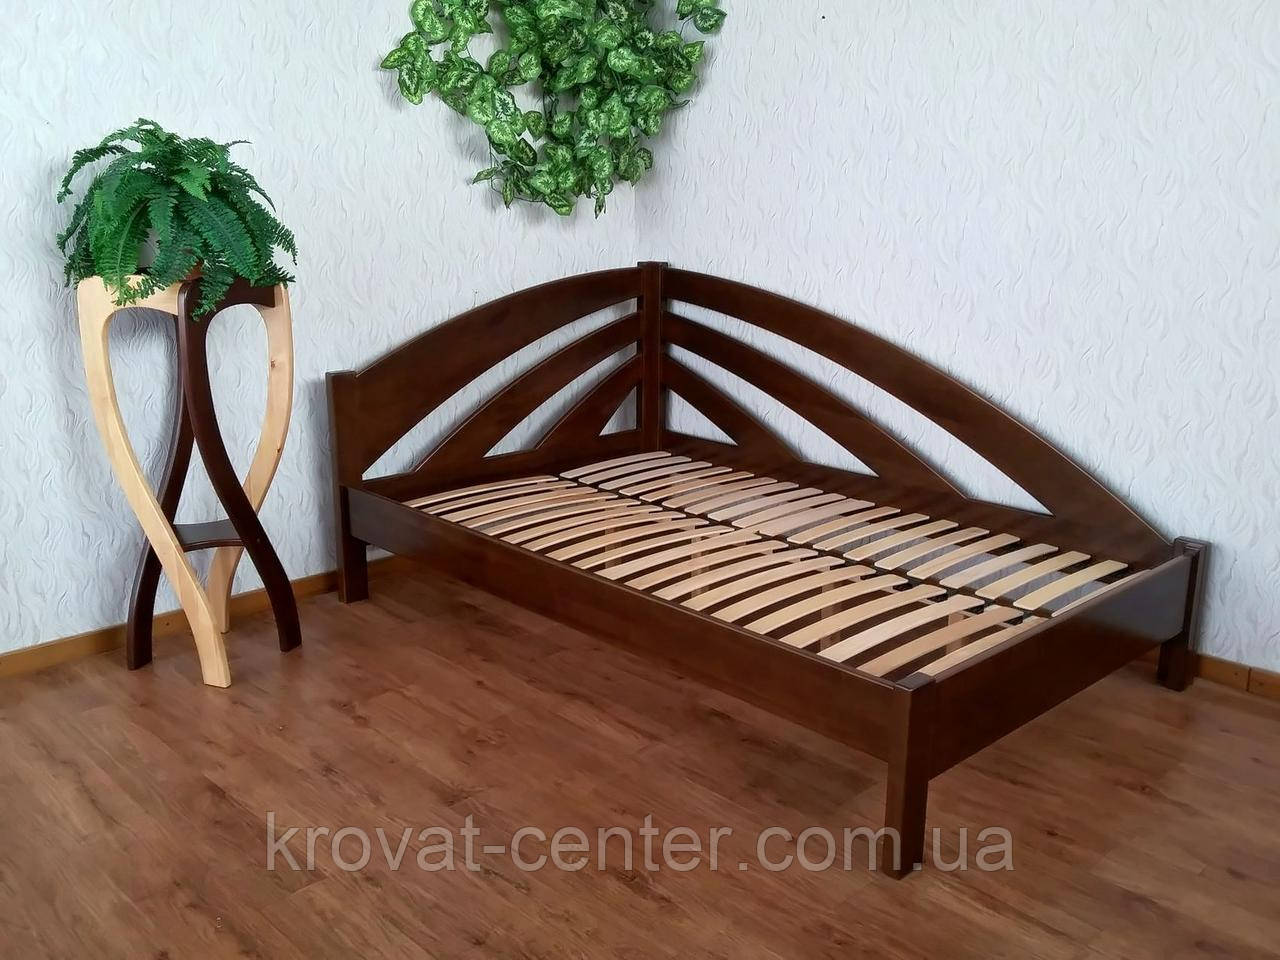 Напівторне дерев'яне ліжко для спальні кутове з масиву натурального дерева "Райдуга" від виробника